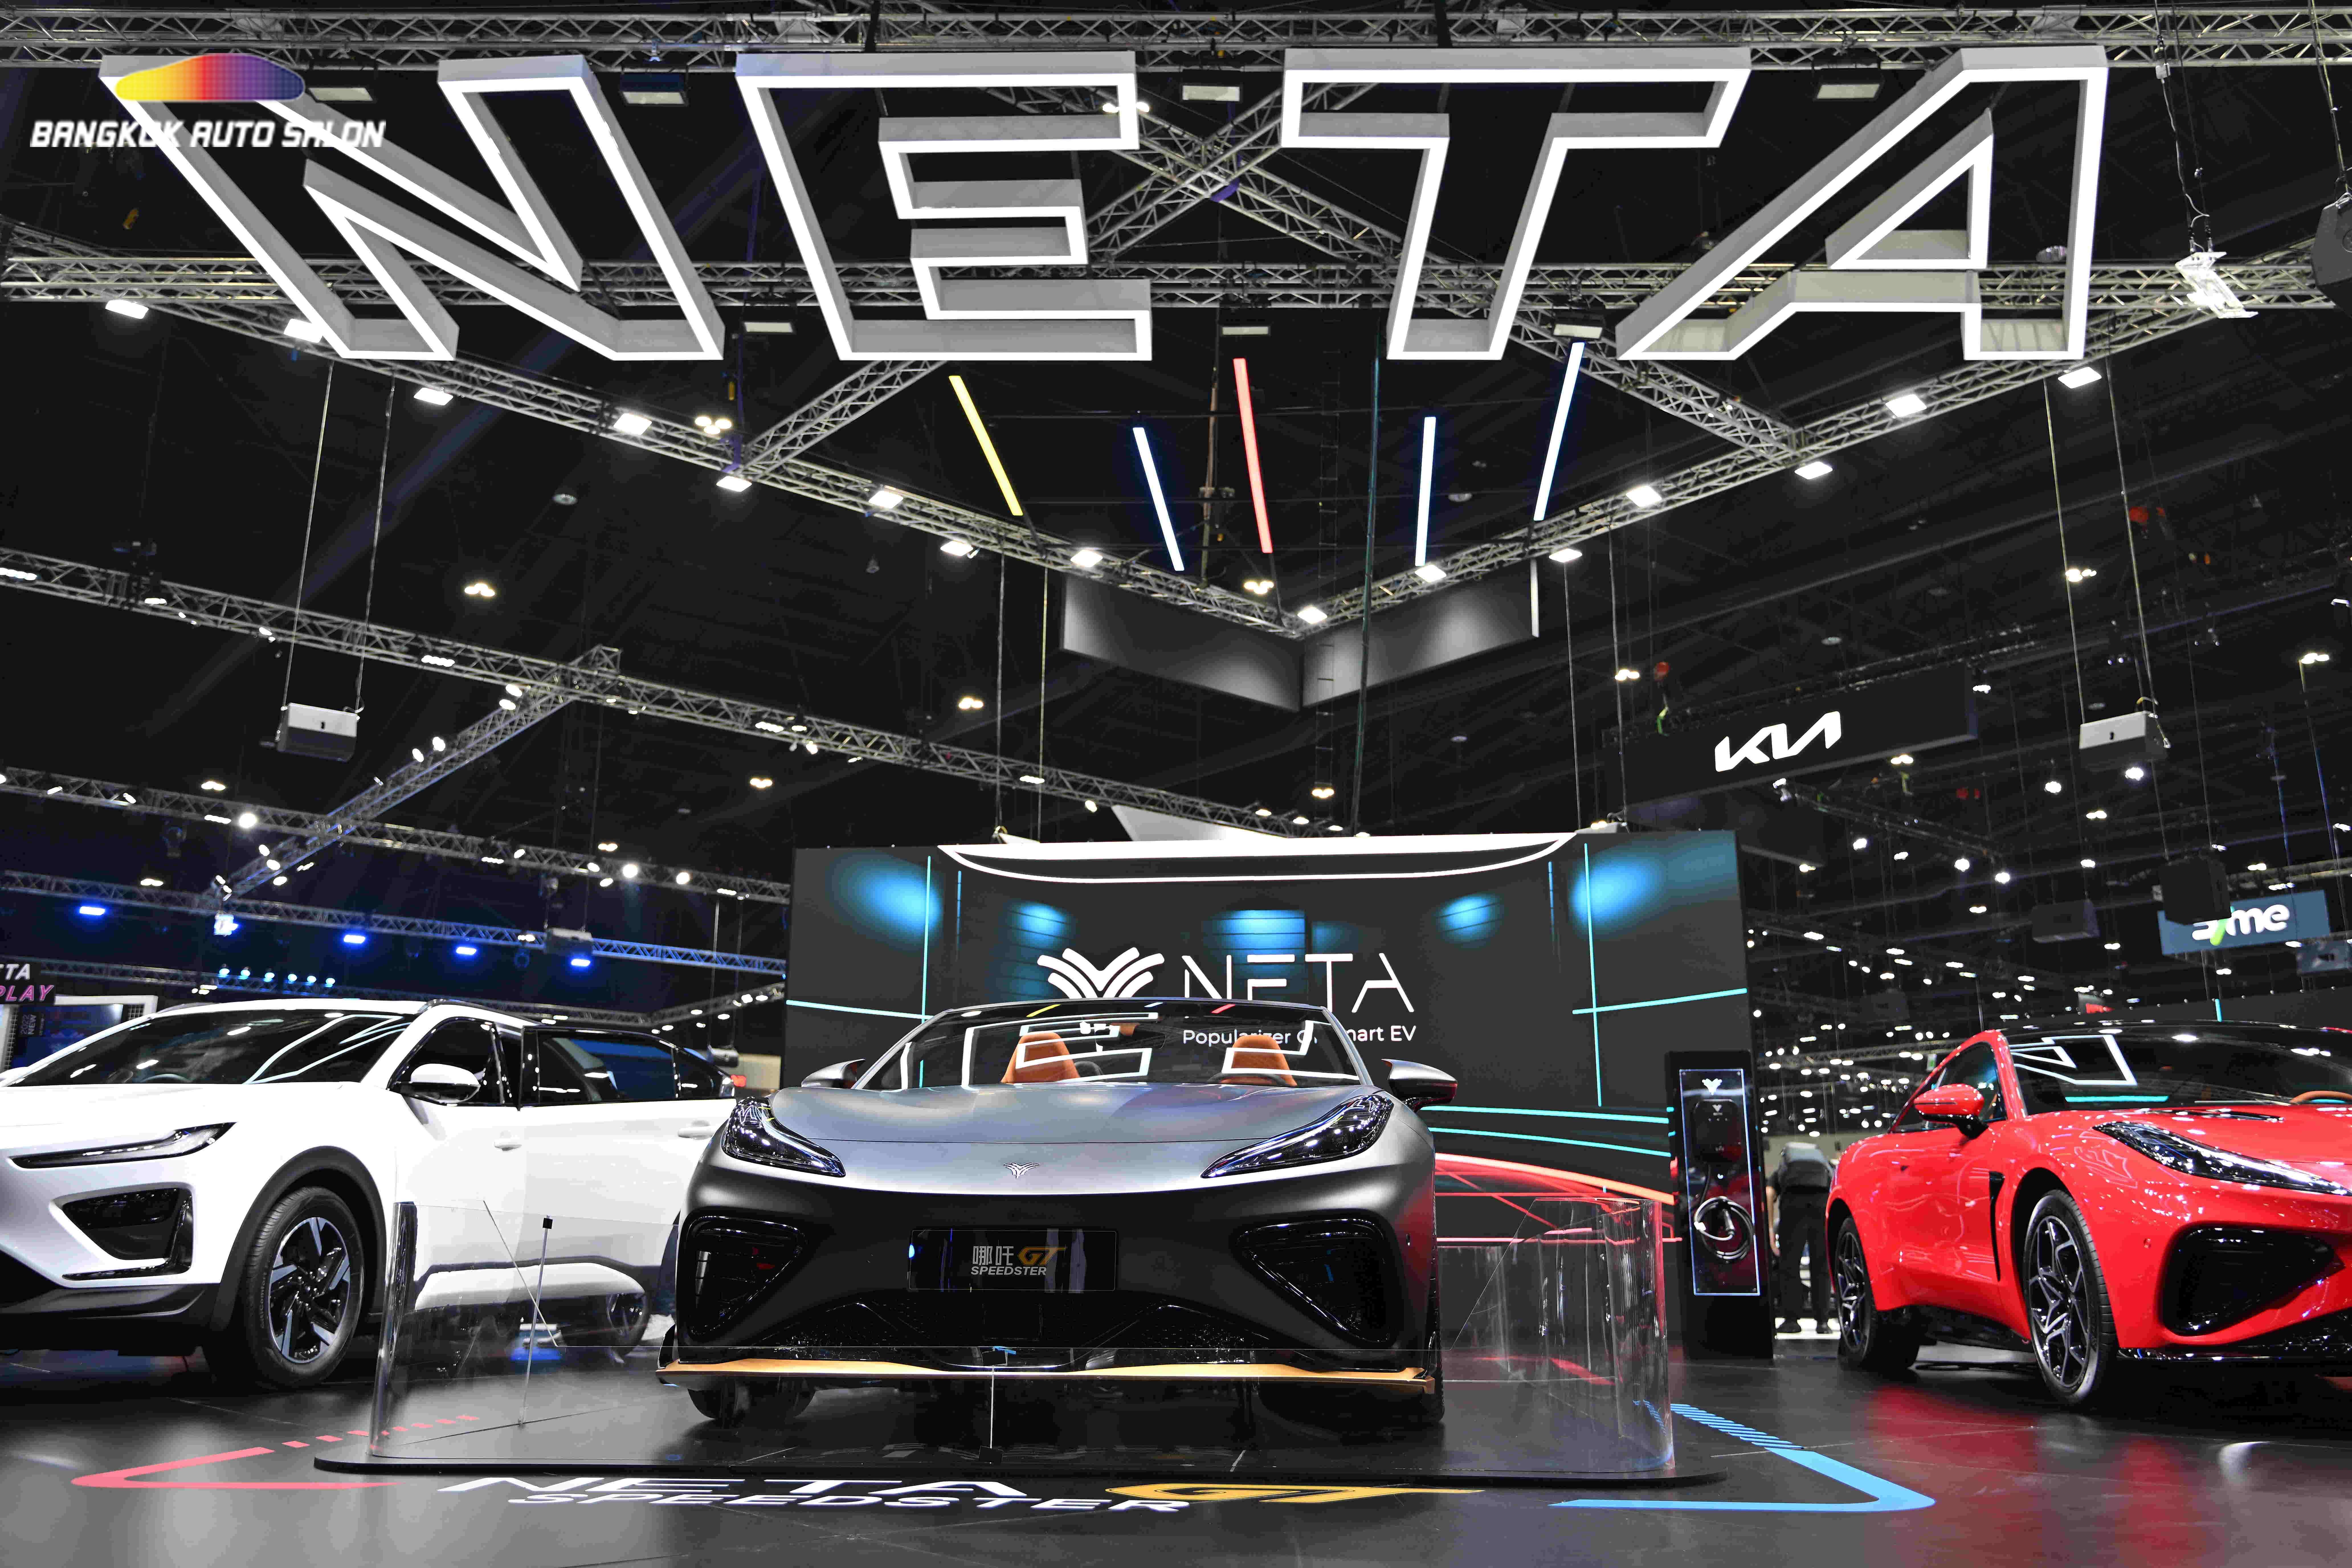 “NETA” ยกทัพยานยนต์พลังงานไฟฟ้า 100% จัดแสดงโชว์ พร้อมข้อเสนอที่ดีที่สุดในงานมอเตอร์เอ็กซ์โป ครั้งที่ 40